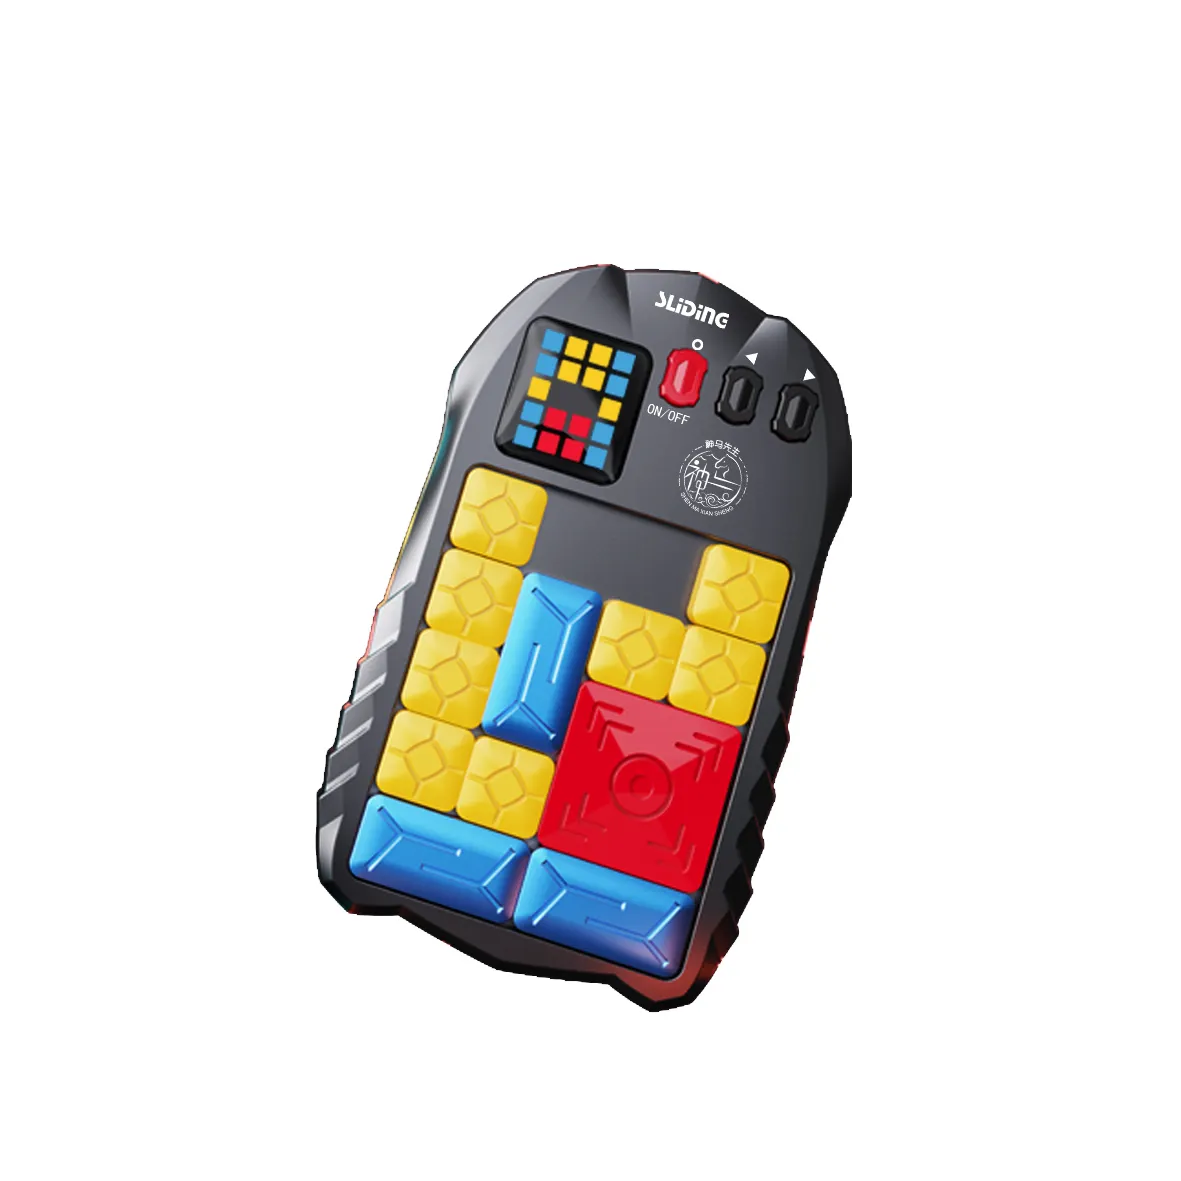 슈퍼 슬라이드 두뇌 게임 500 + 레벨 브레인 스톰 퍼즐 게임 플라스틱 교육 장난감 ABS 디지털 Huarong 도로 퍼즐 장난감/300g